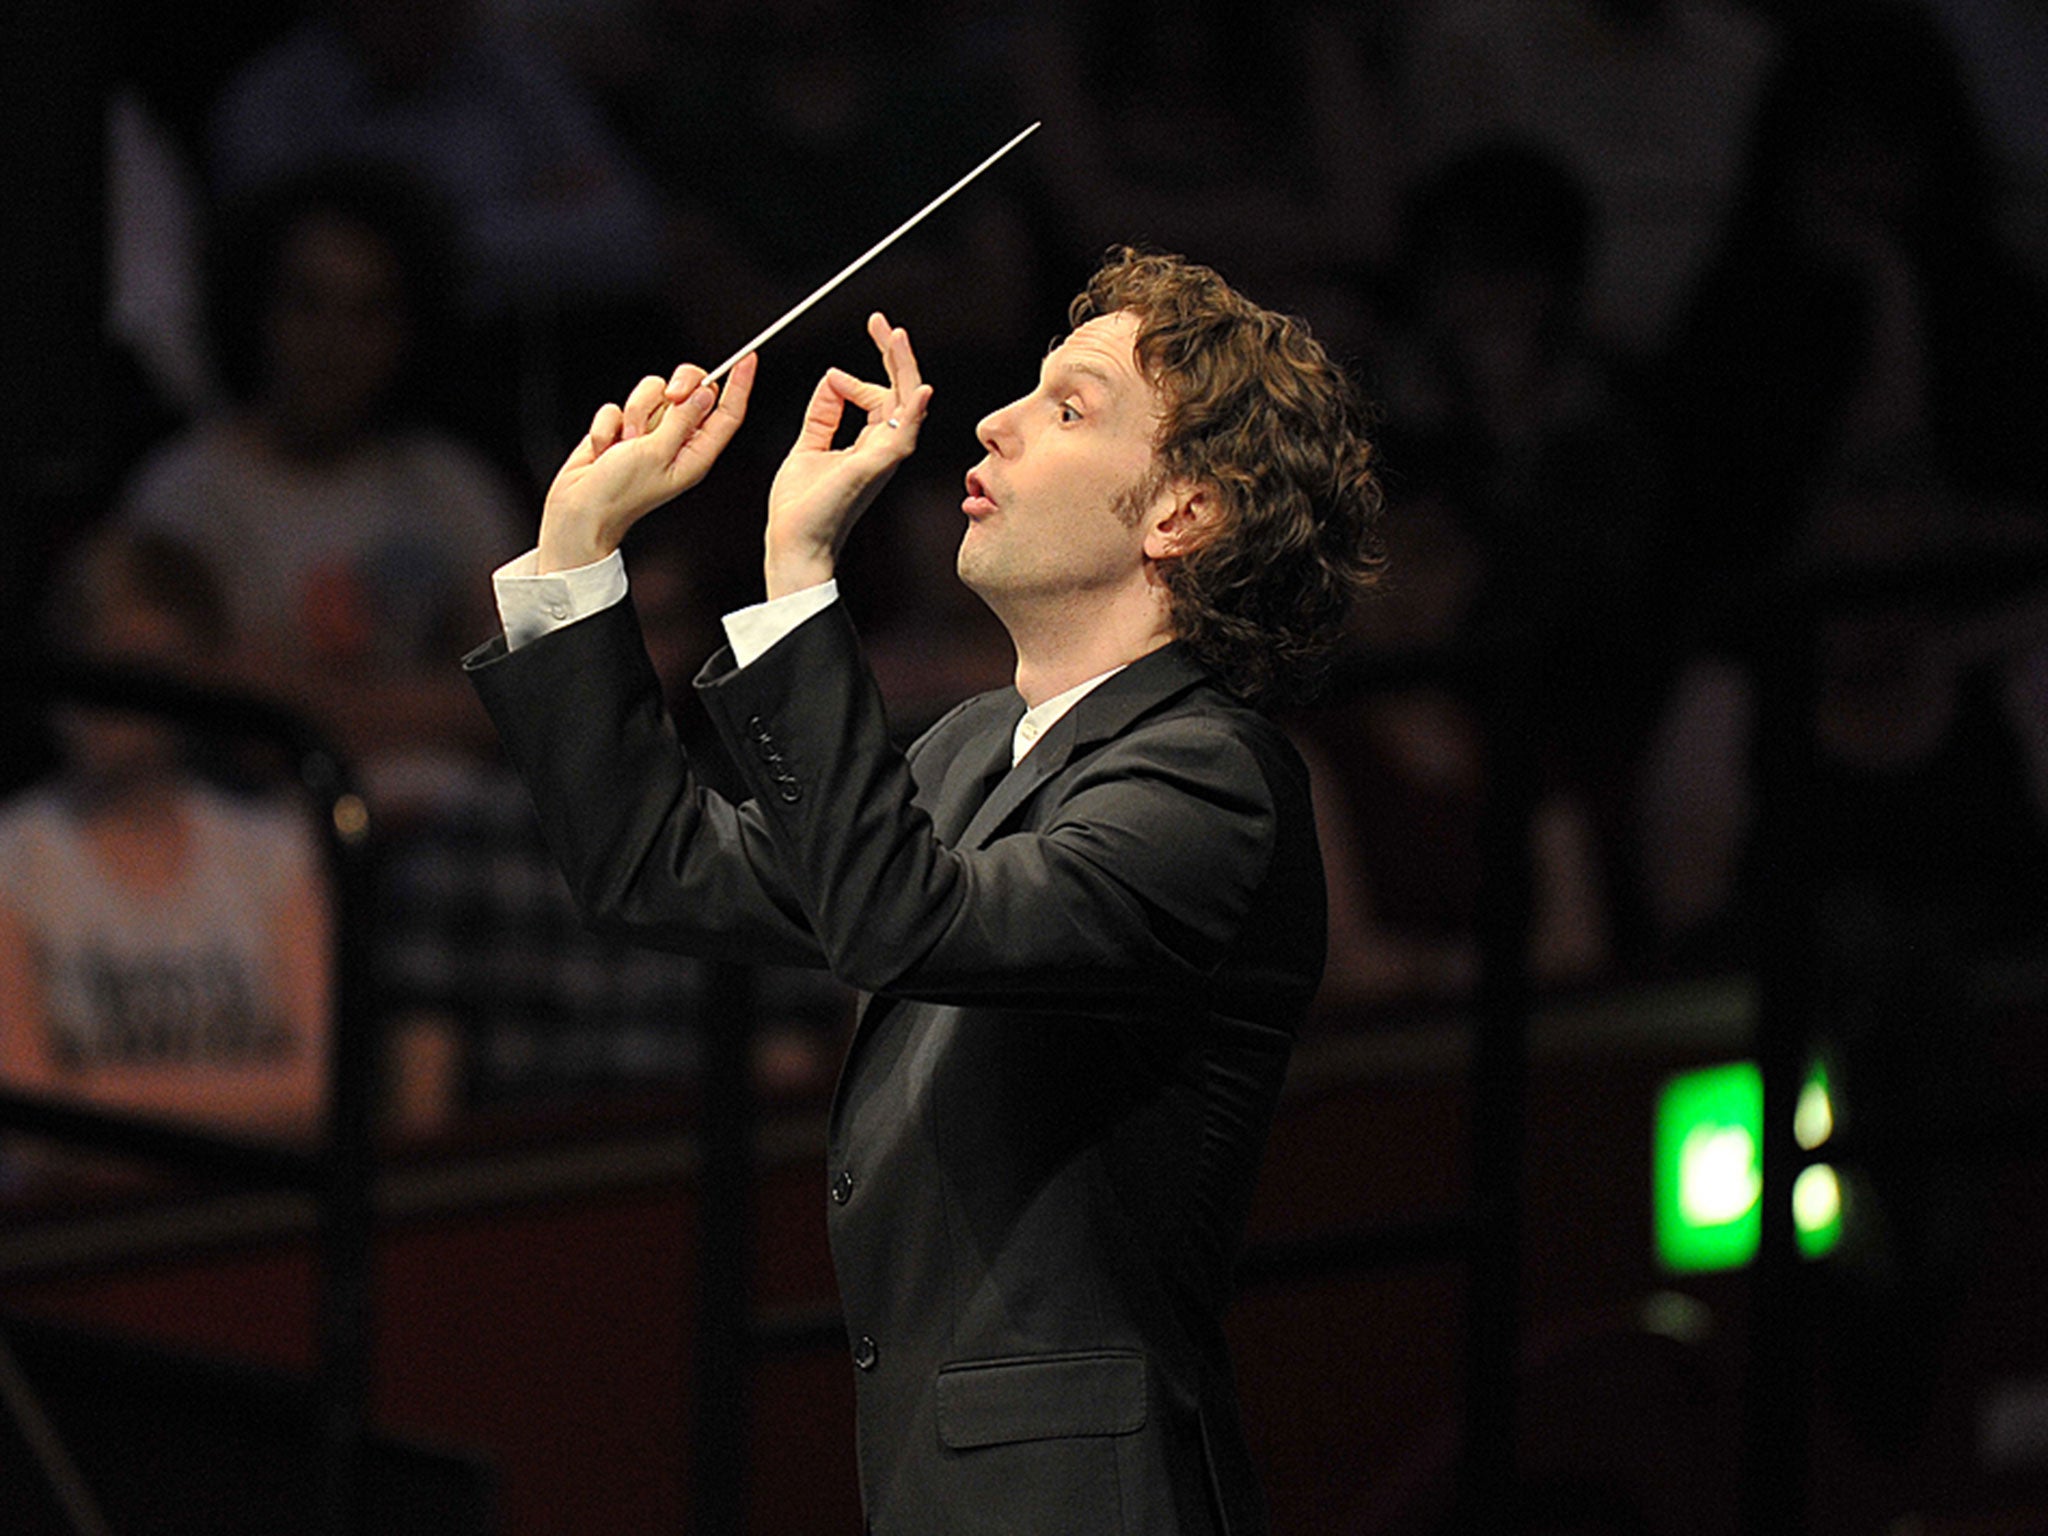 Nicholas Collon conducts the Aurora Orchestra